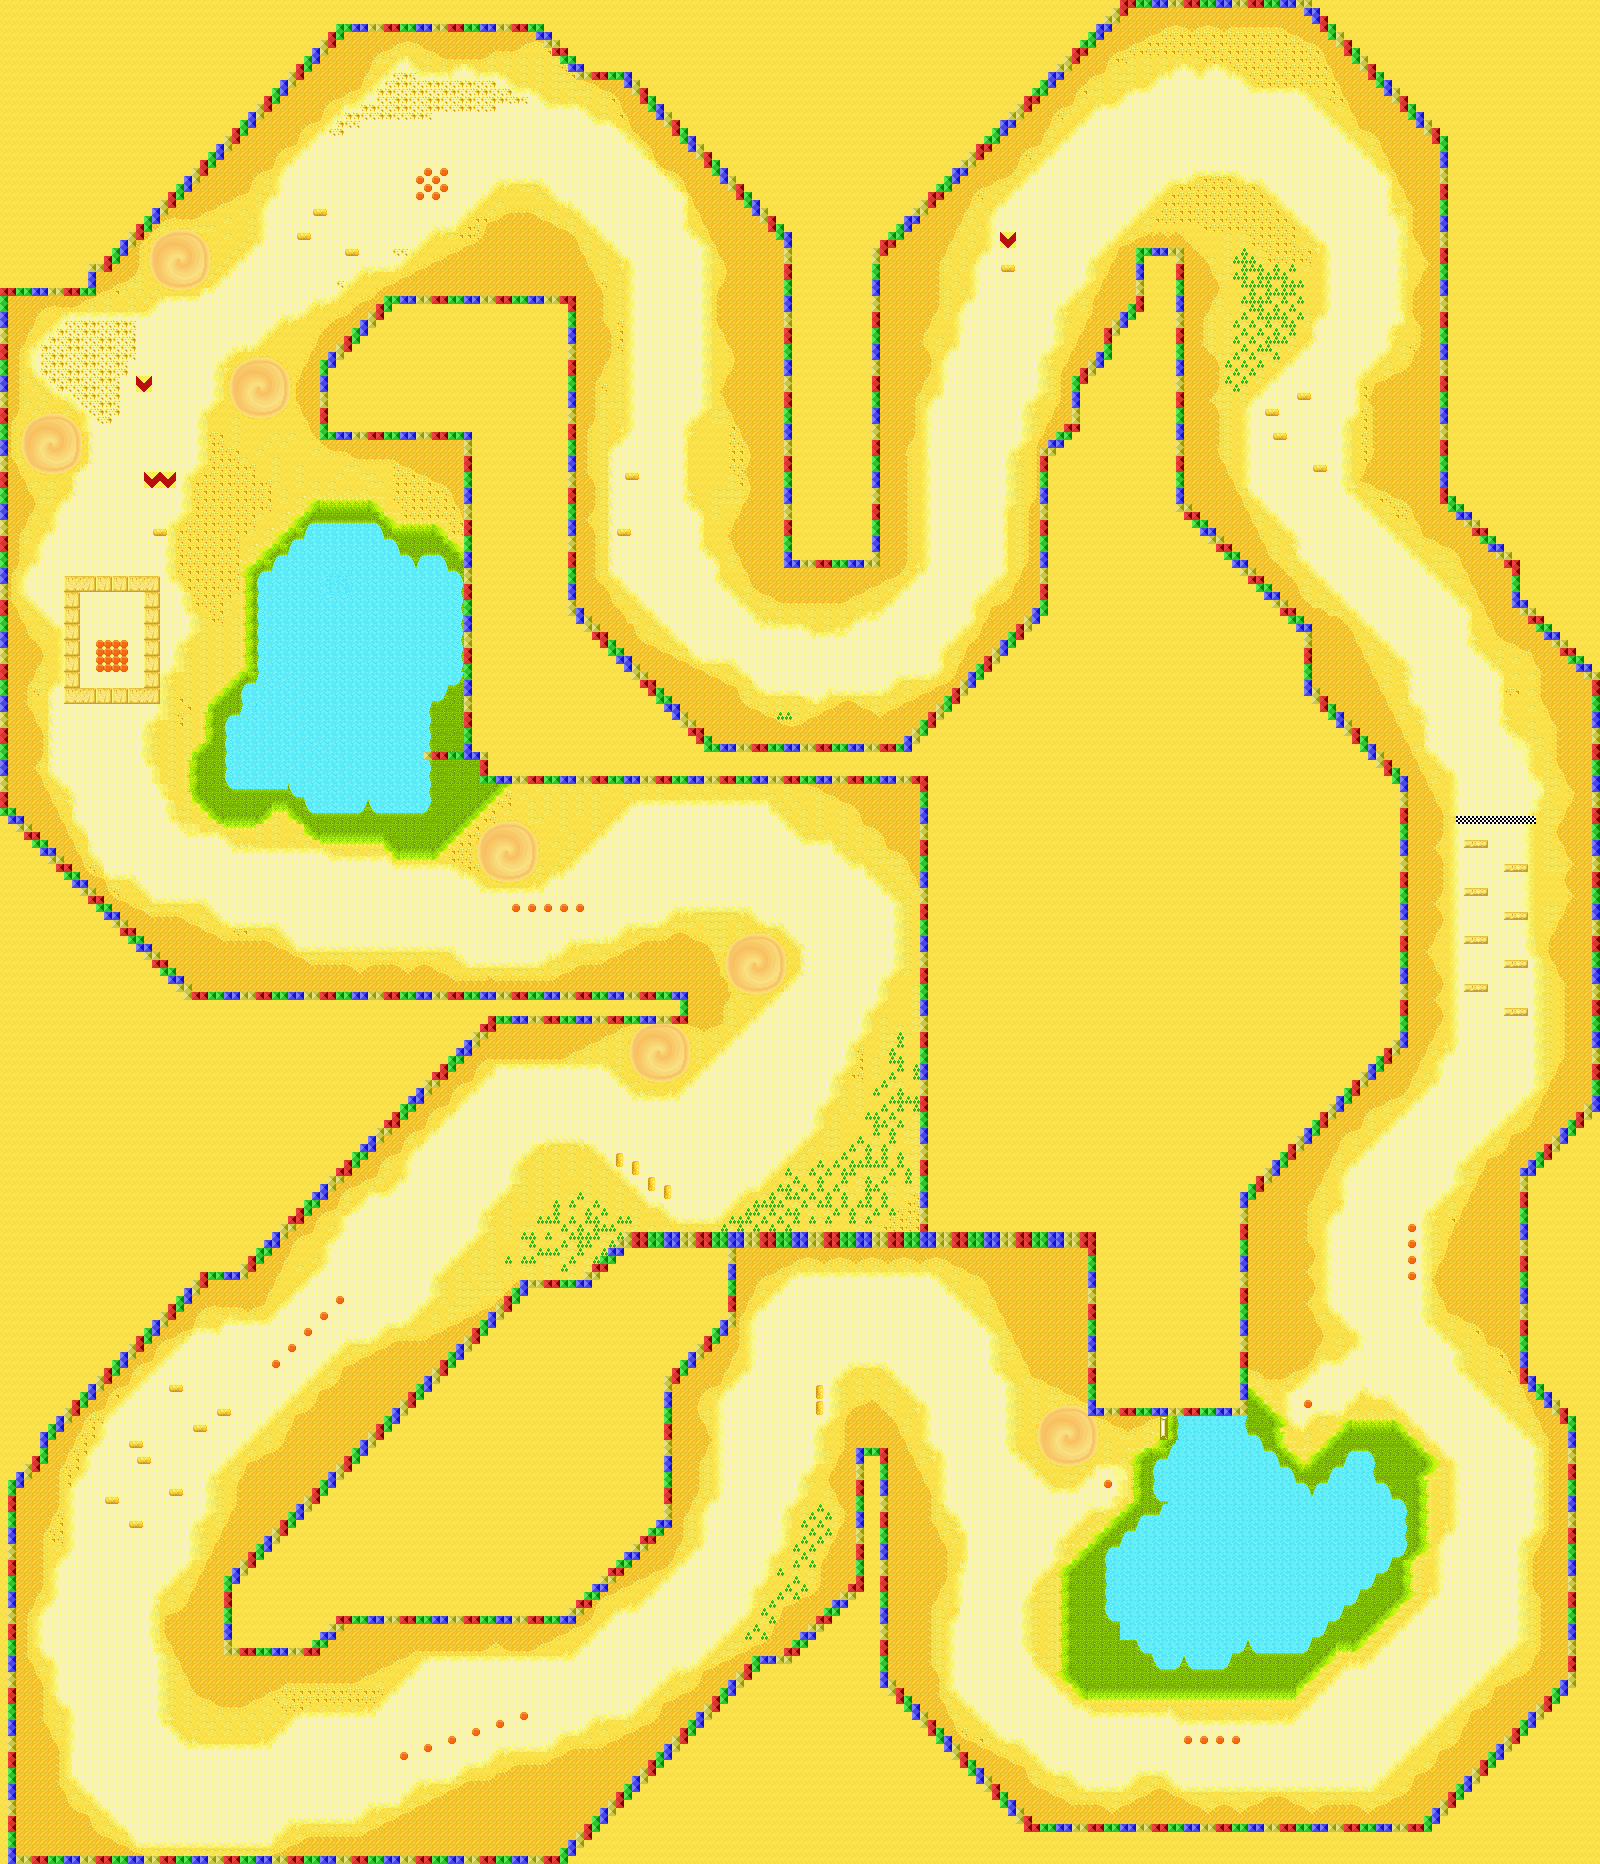 Mario Kart: Super Circuit - Yoshi Desert